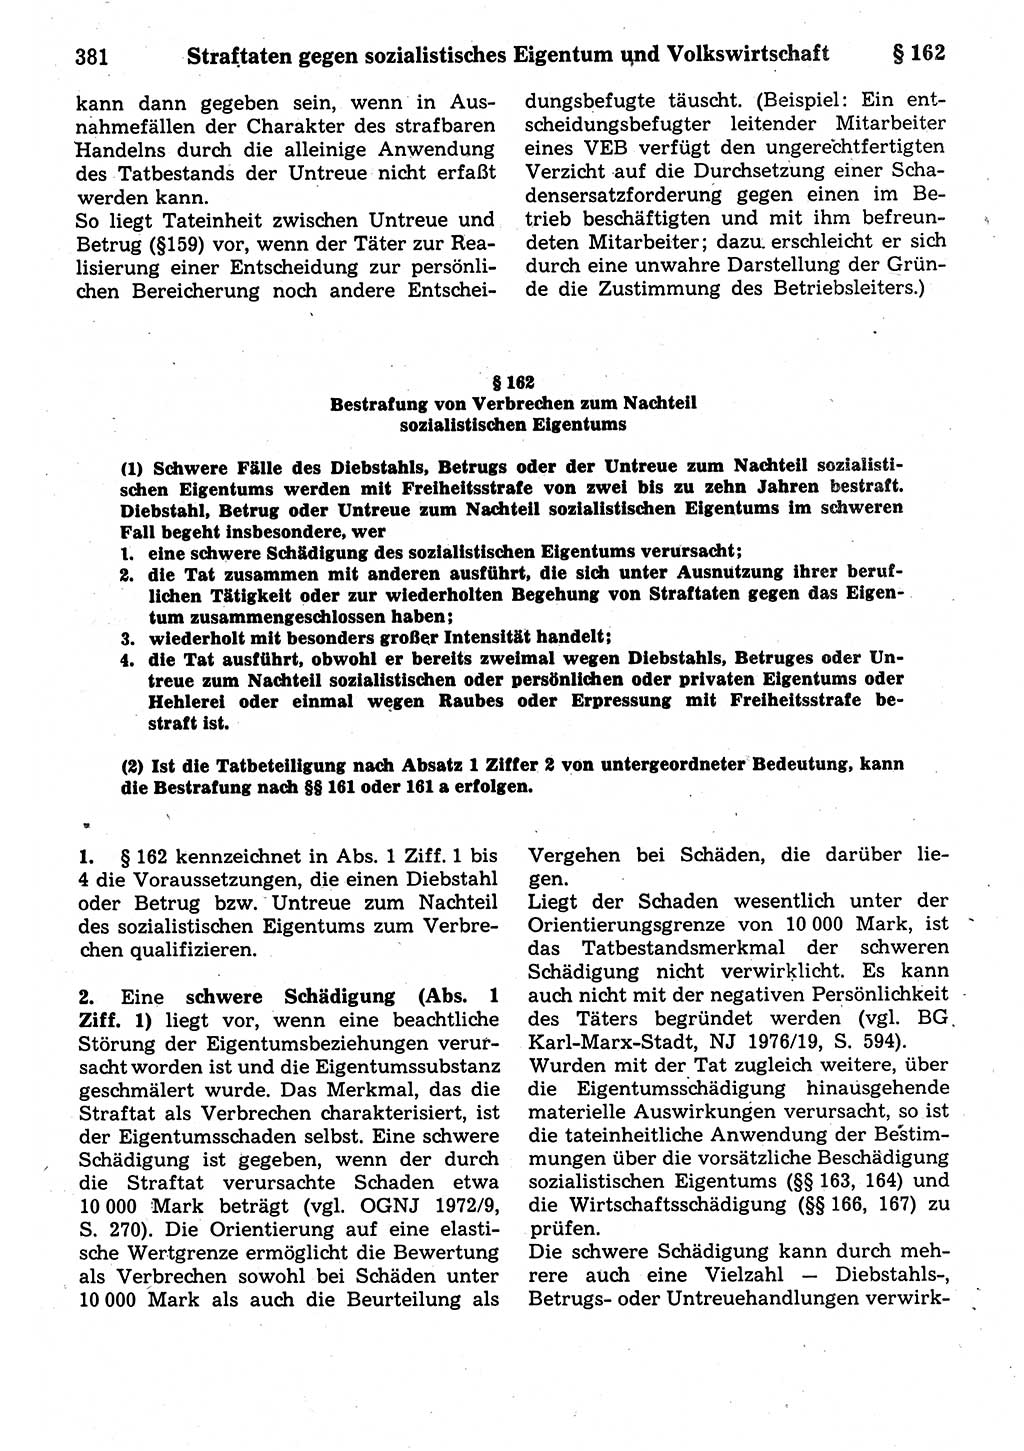 Strafrecht der Deutschen Demokratischen Republik (DDR), Kommentar zum Strafgesetzbuch (StGB) 1987, Seite 381 (Strafr. DDR Komm. StGB 1987, S. 381)